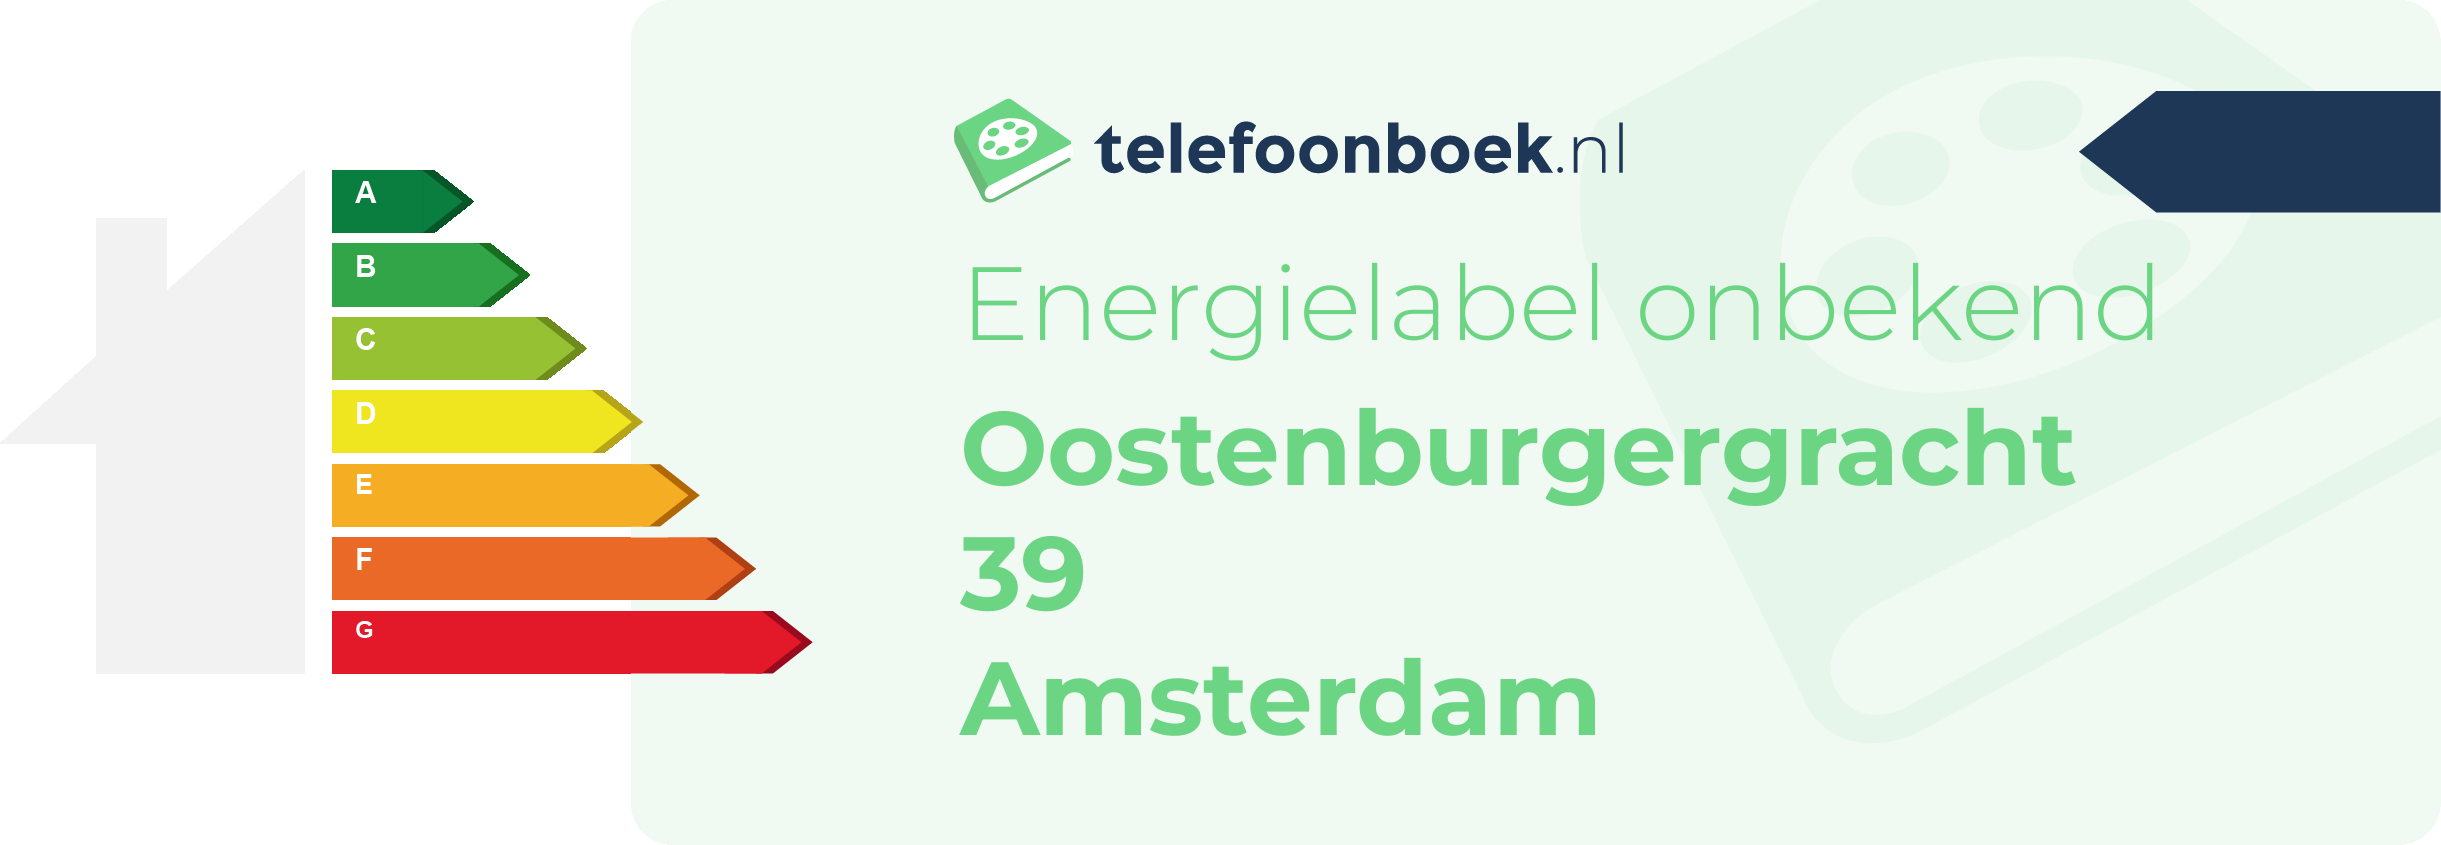 Energielabel Oostenburgergracht 39 Amsterdam